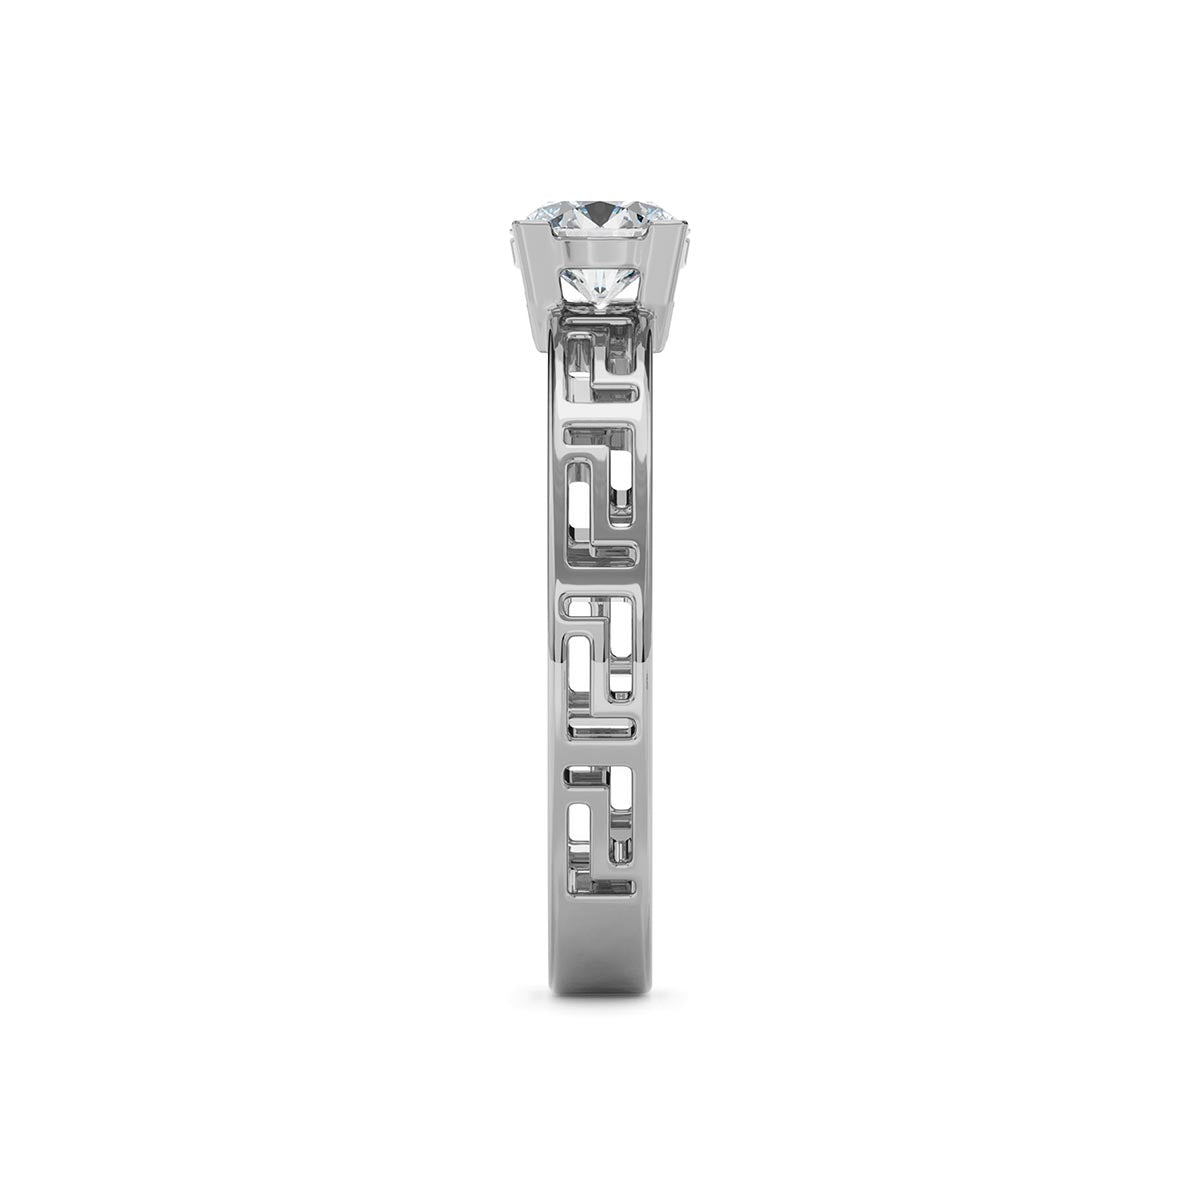 Greek Key 0.50 Carat Diamond Engagement Ring